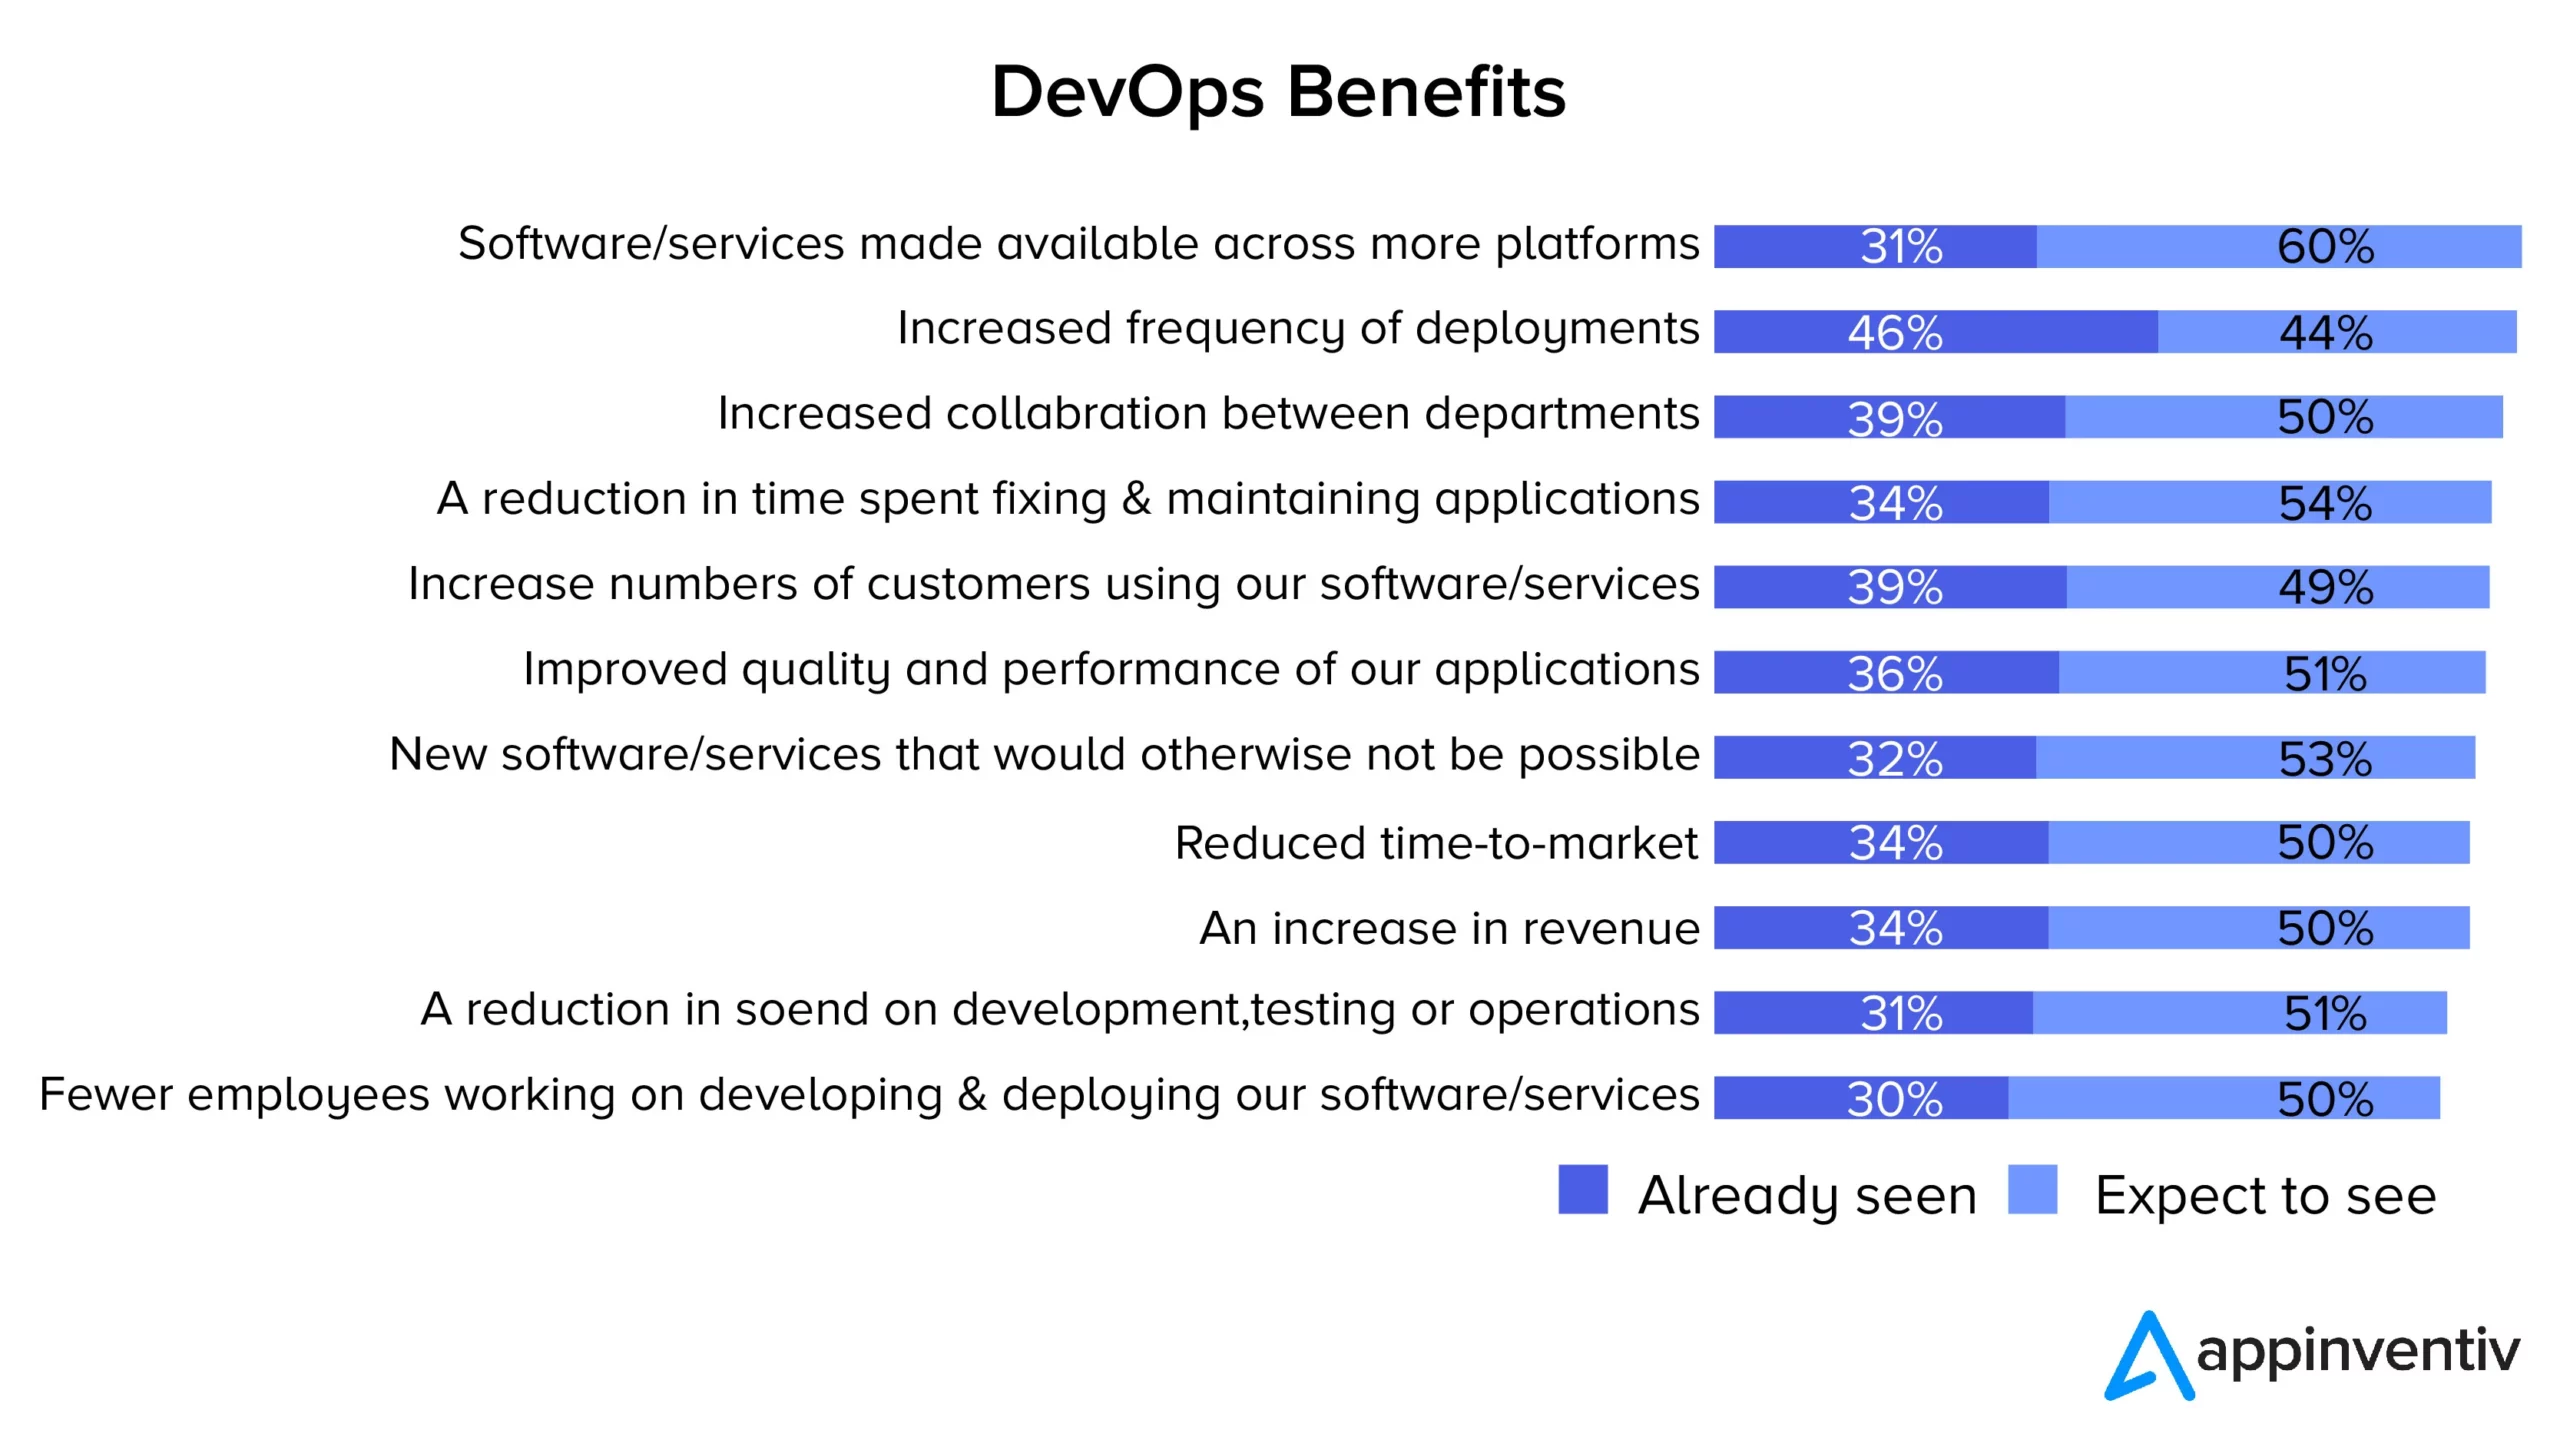 ประโยชน์ของ DevOps สำหรับองค์กร